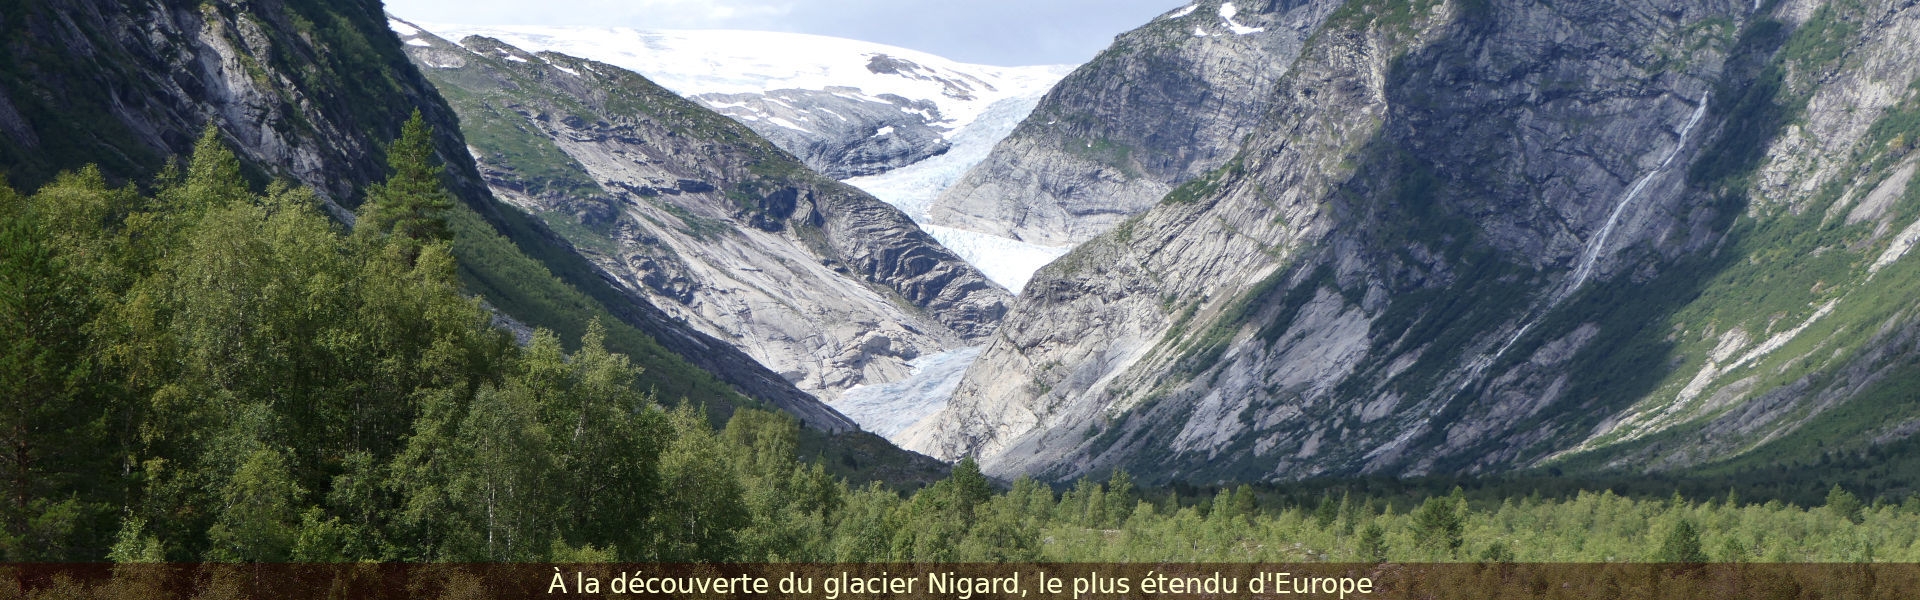 Glacier Nidgard le plus étendu d'Europe, Norvège